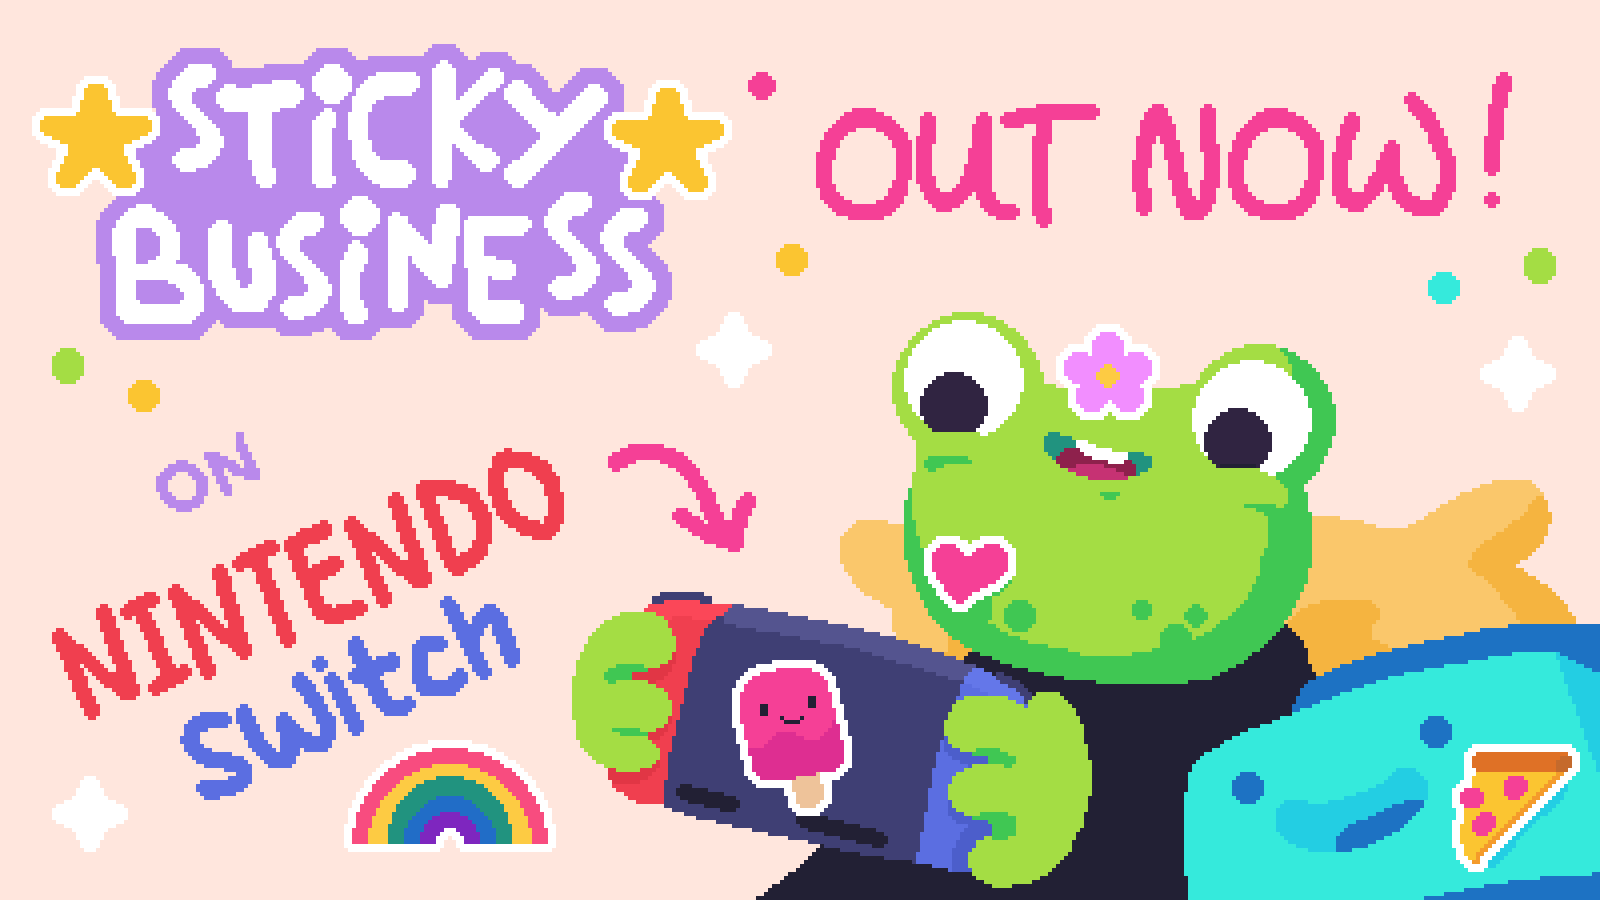 Überraschung: Sticky Business erscheint heute für die Nintendo Switch!